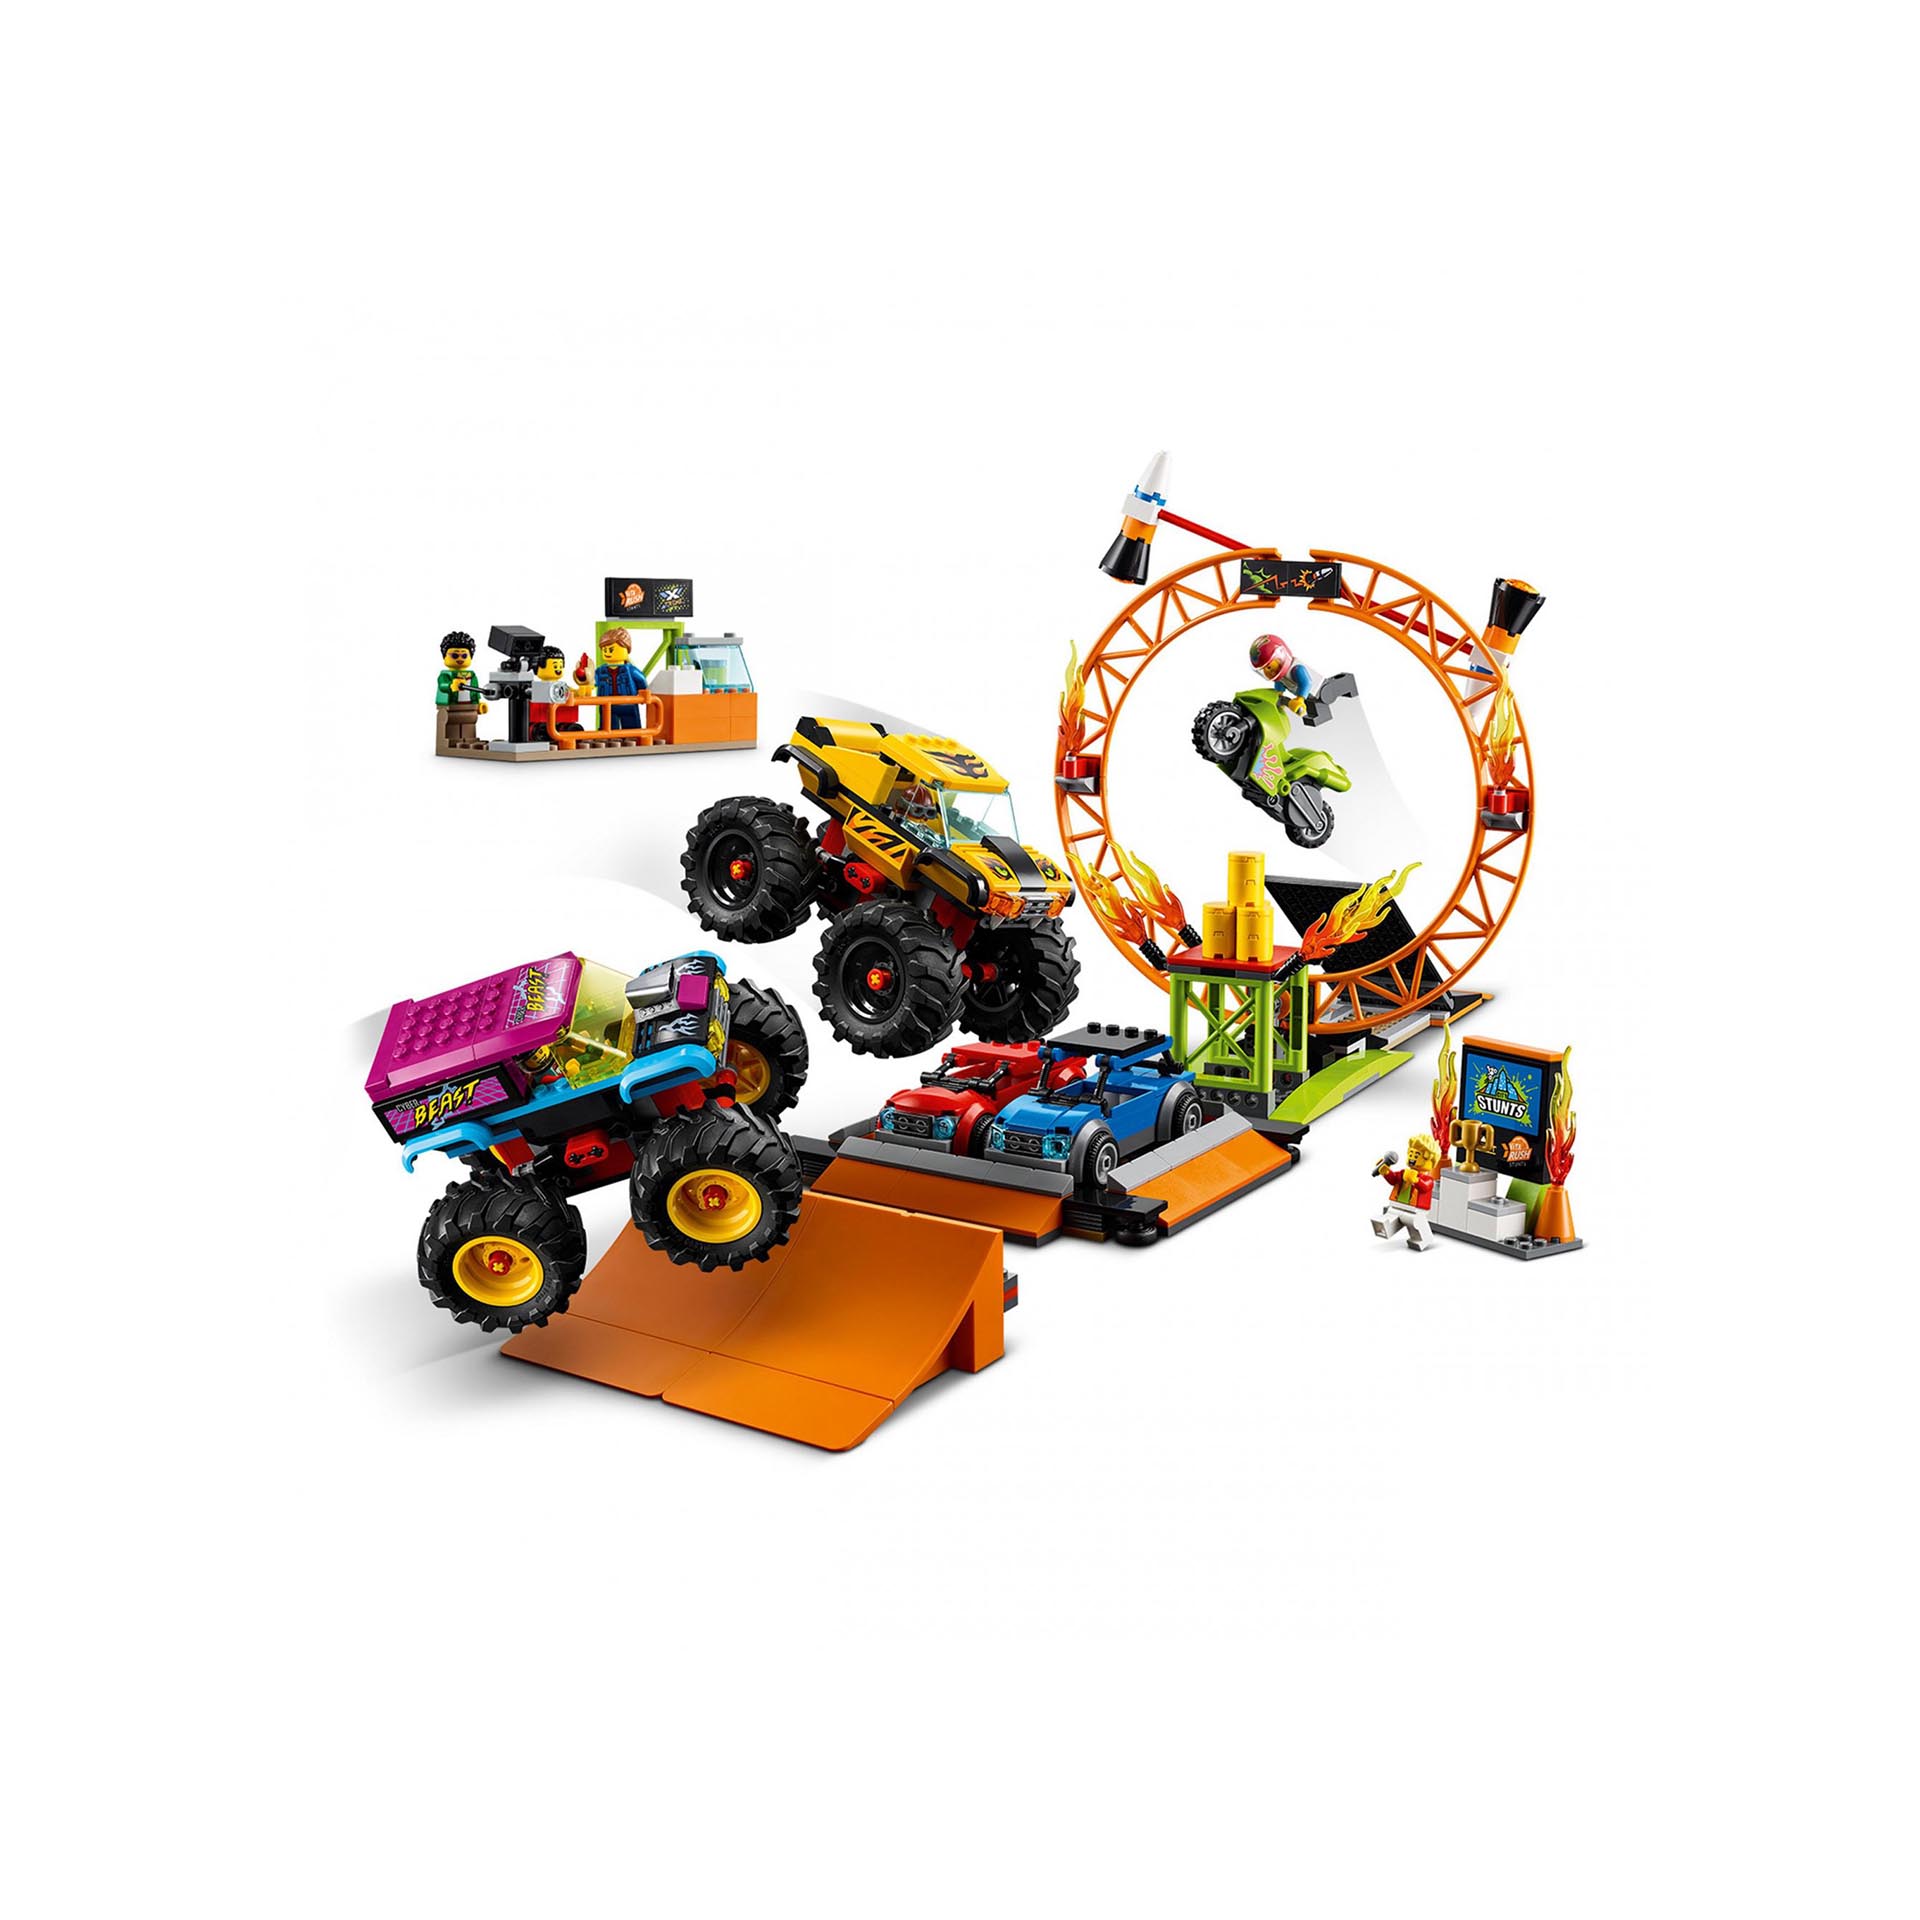 LEGO City Stuntz Arena dello Stunt Show, Set con 2 Monster Truck Giocattolo, 2 A 60295, , large